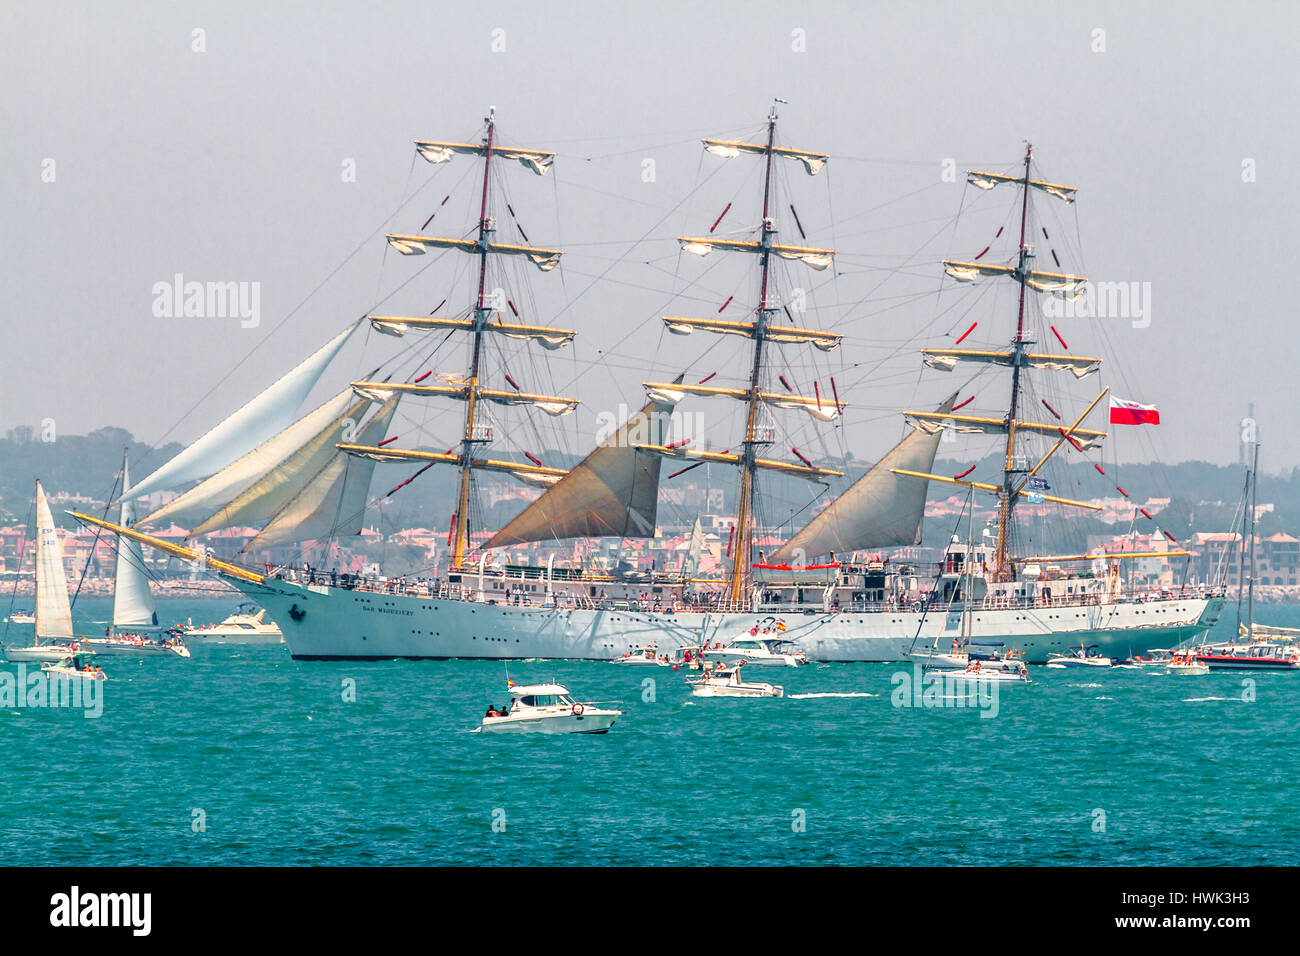 CADIZ, Spanien - 29 JUL: Polnische Marine Schiff, Rennen Dar Mlodziezy setzen Segel auf dem Großsegler 2012 am 29. Juli 2012, in Cadiz, Spanien Stockfoto